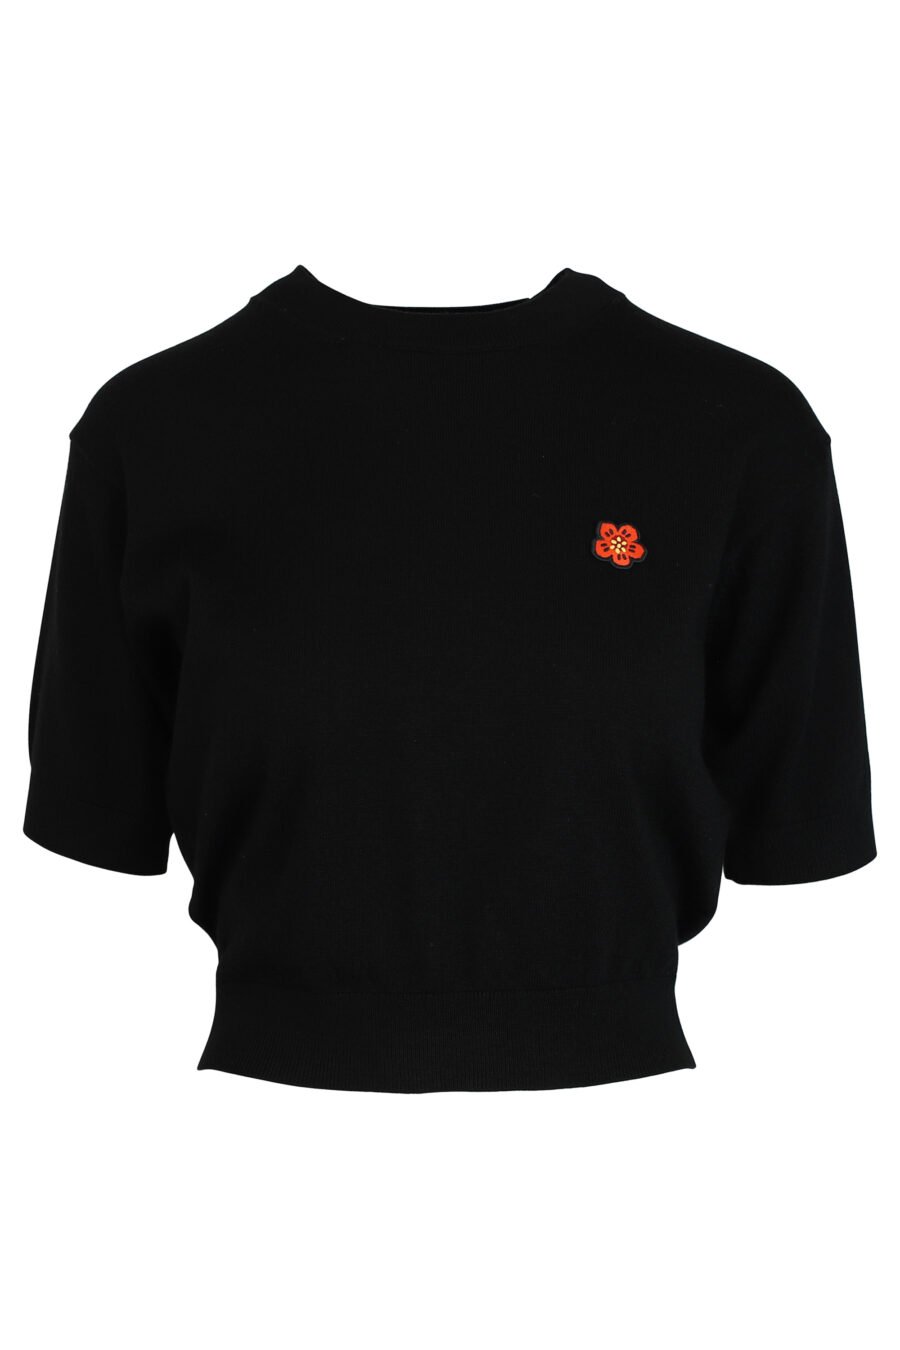 Schwarzer Pullover mit orangem Mini-Logo - 3612230446106